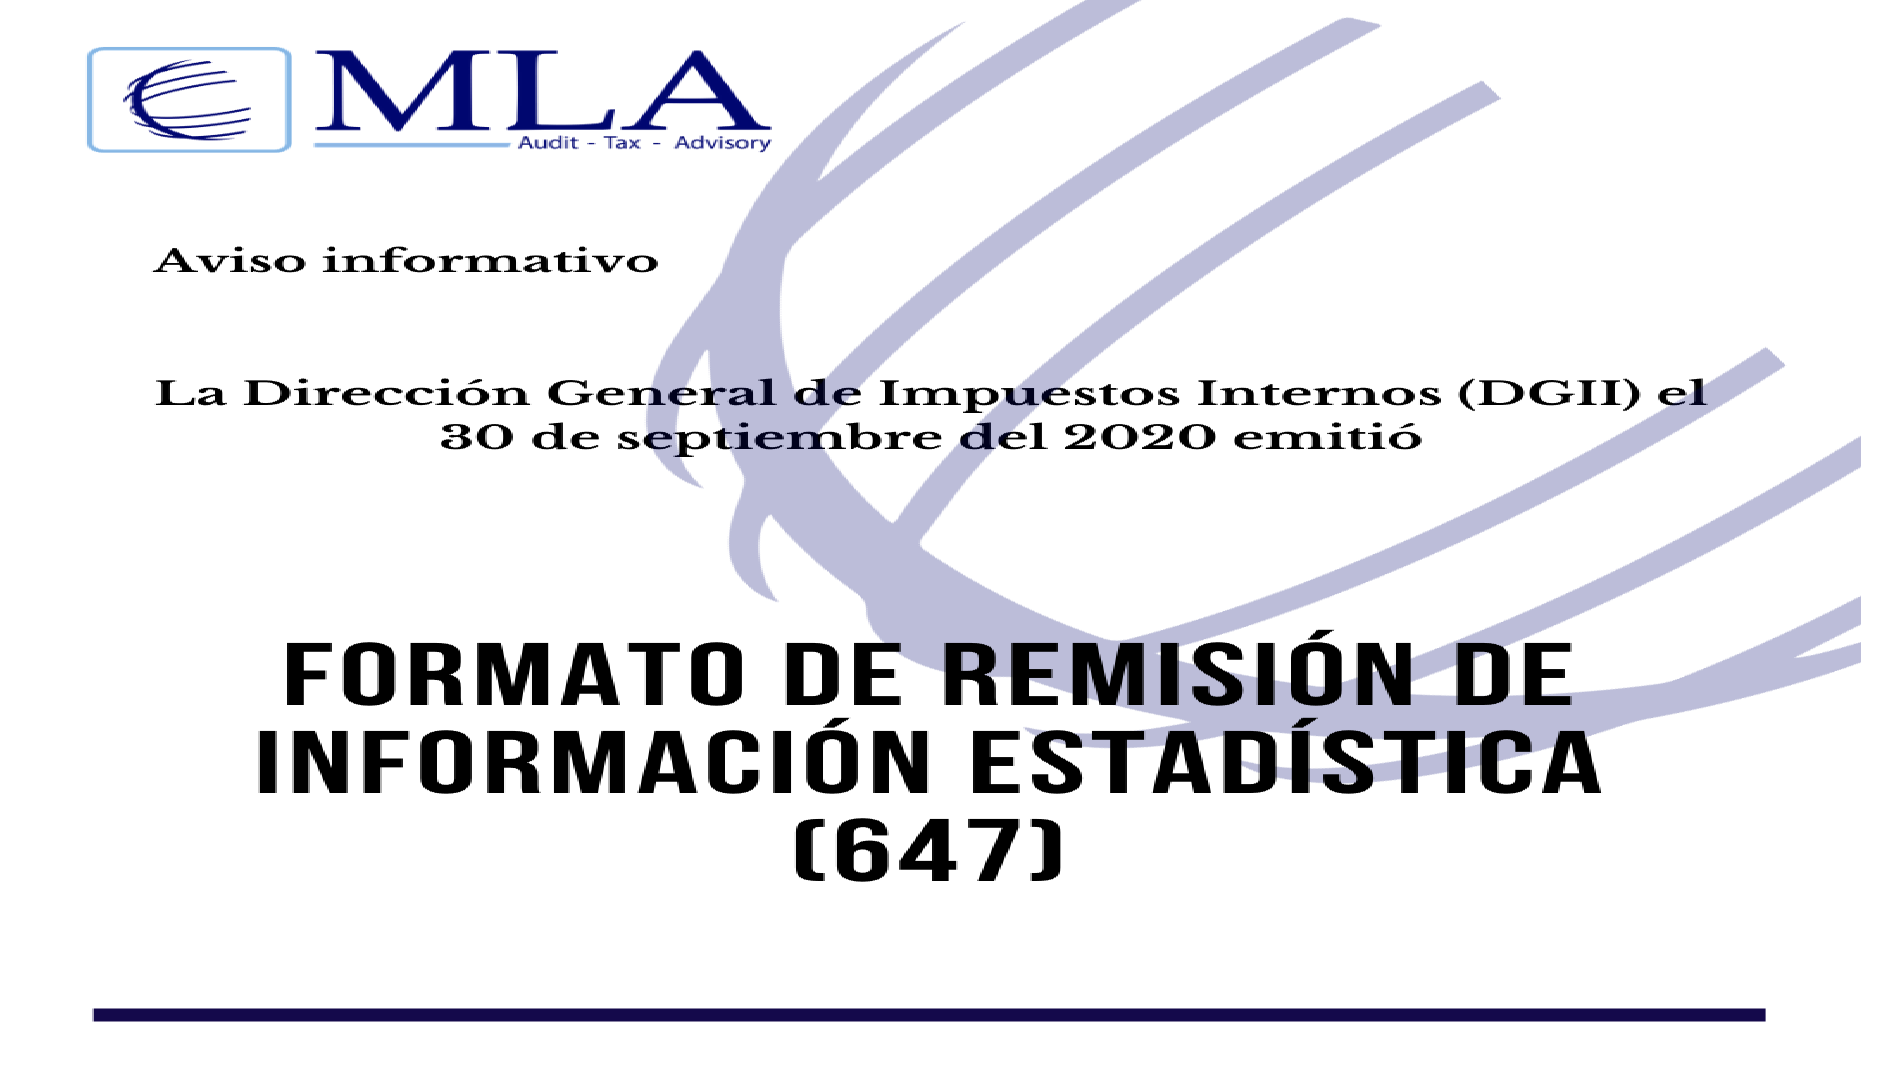 FORMATO DE REMISIÓN DE INFORMACIÓN ESTADÍSTICA (647)